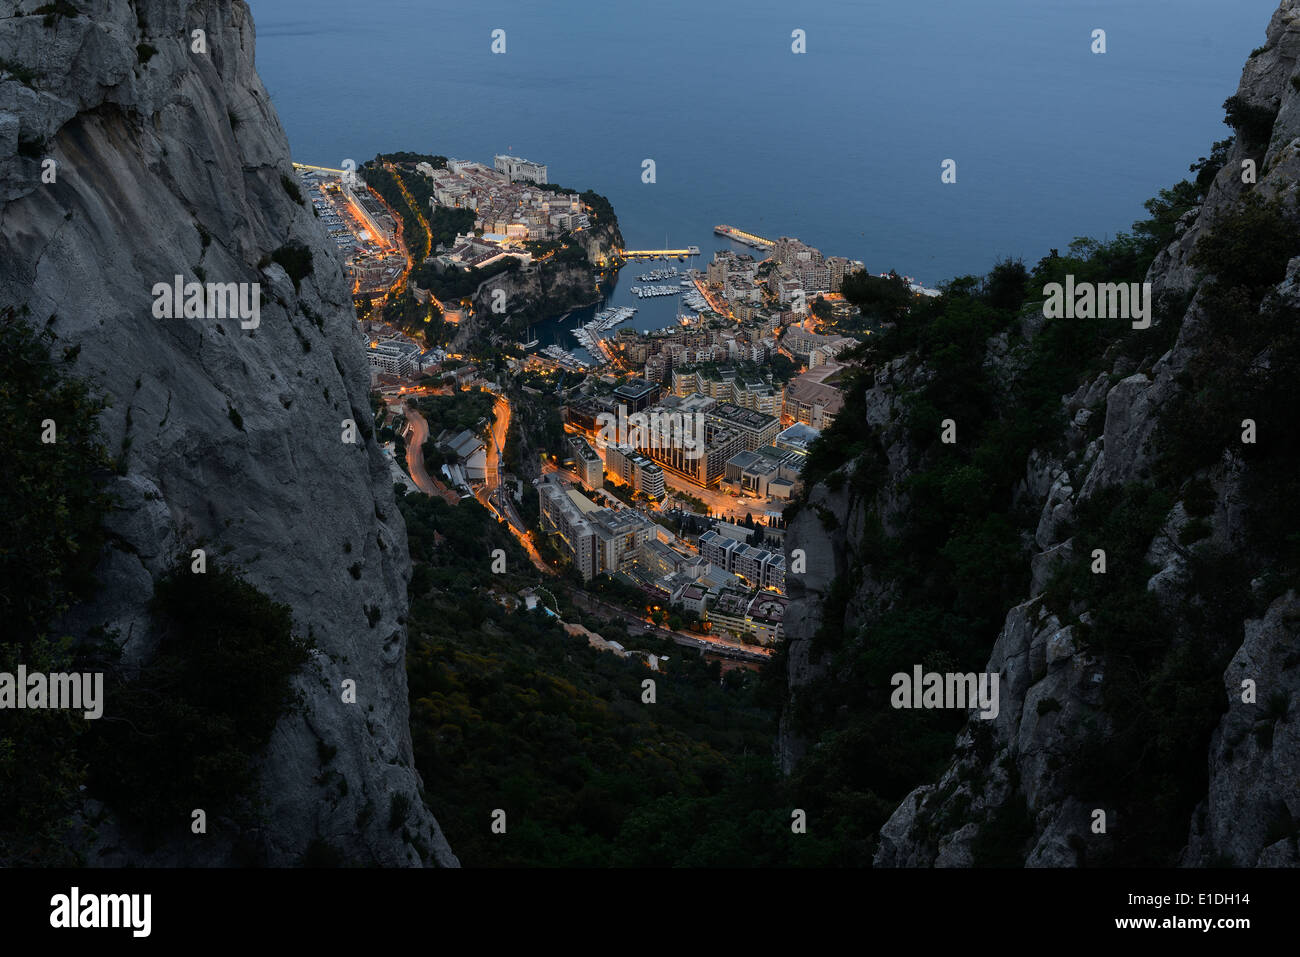 Der Bezirk von Monaco-Ville alias 'le Rocher' und der Yachthafen von Fontvieille umrahmt zwischen zwei Kalksteinfelsen in der Dämmerung. Fürstentum Monaco. Stockfoto